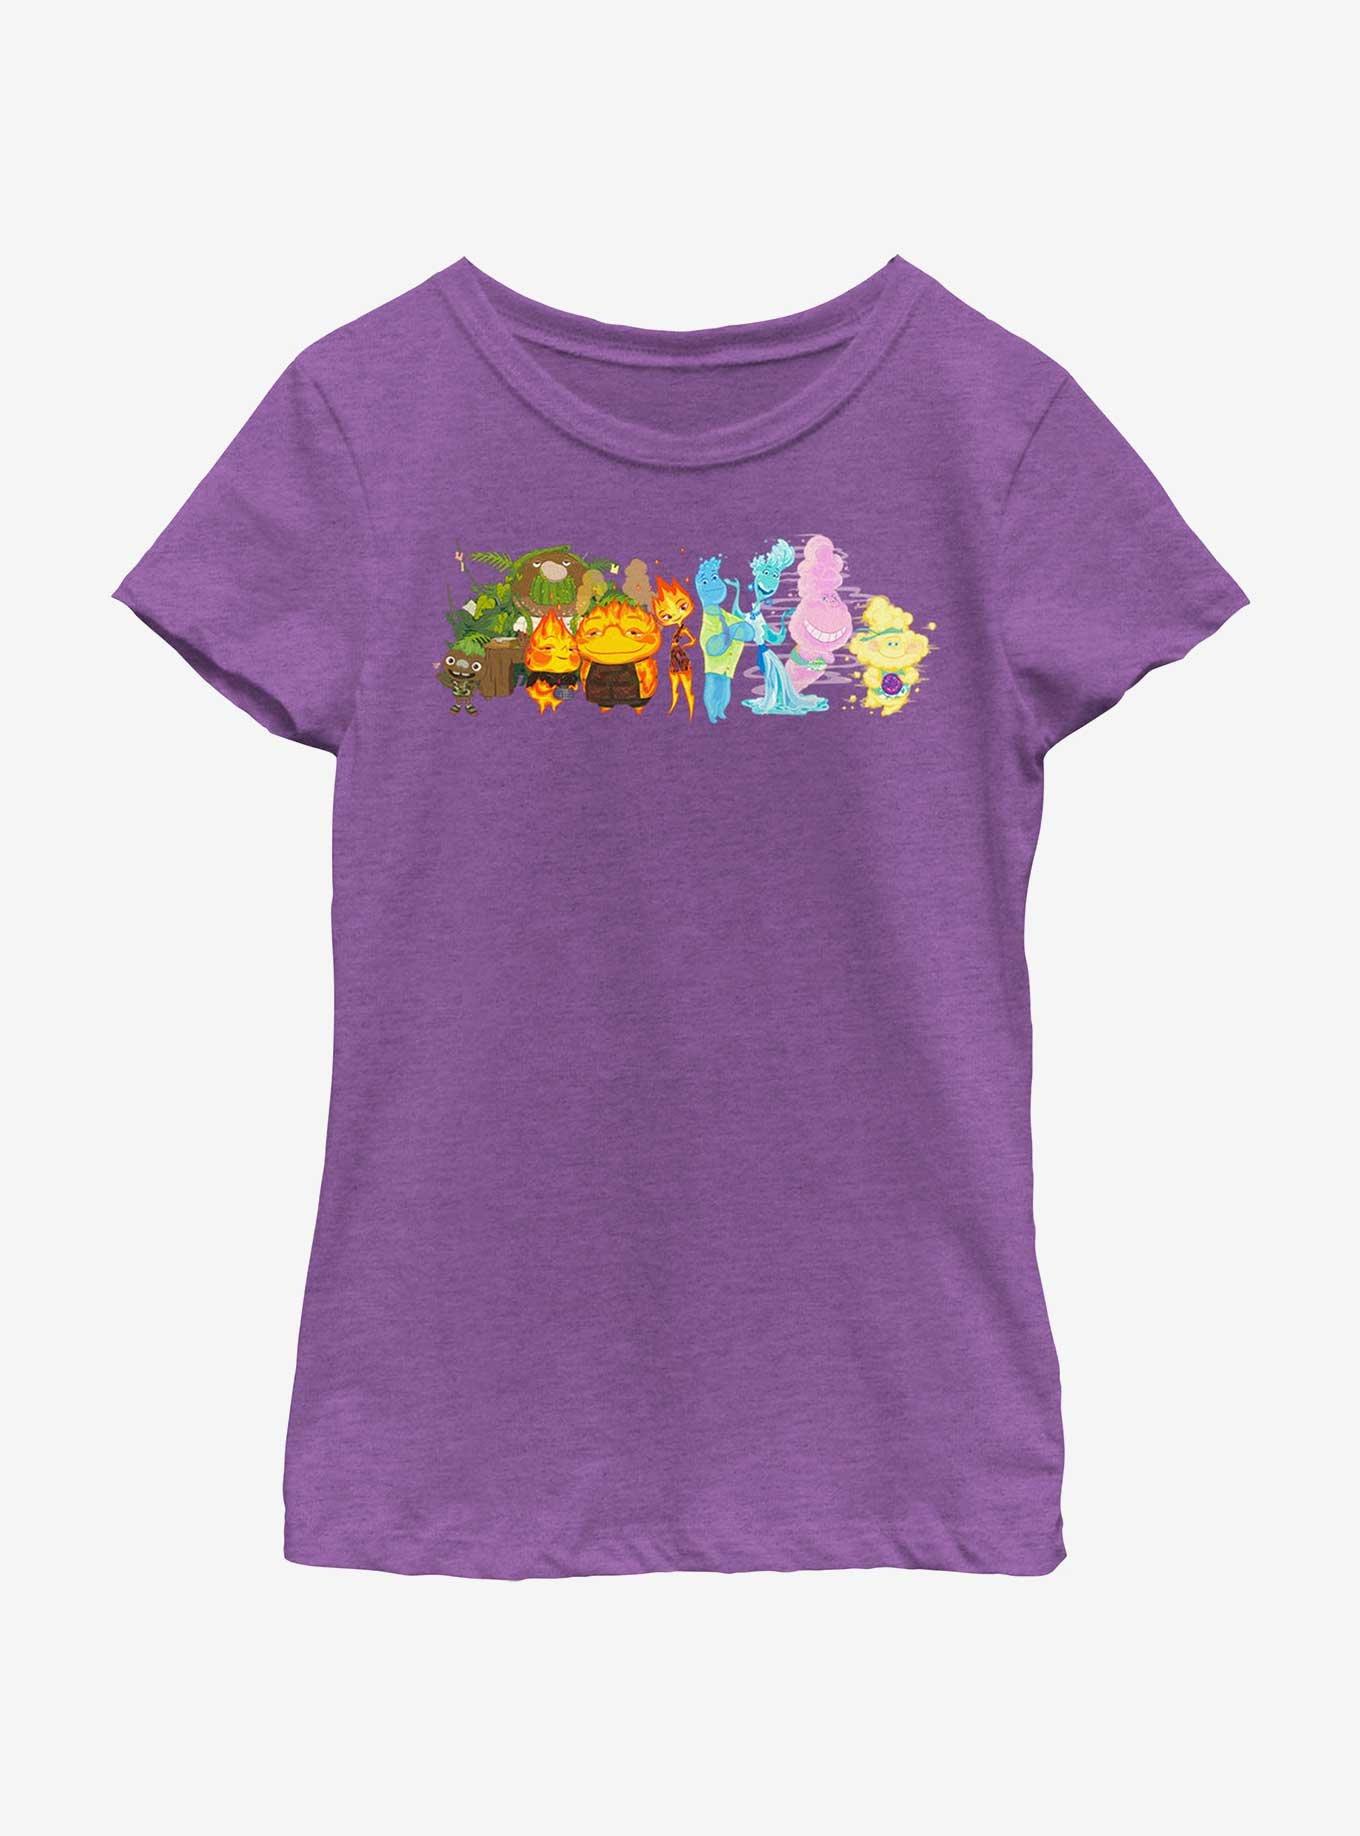 Disney Pixar Elemental Big Groupshot Youth Girls T-Shirt, PURPLE BERRY, hi-res